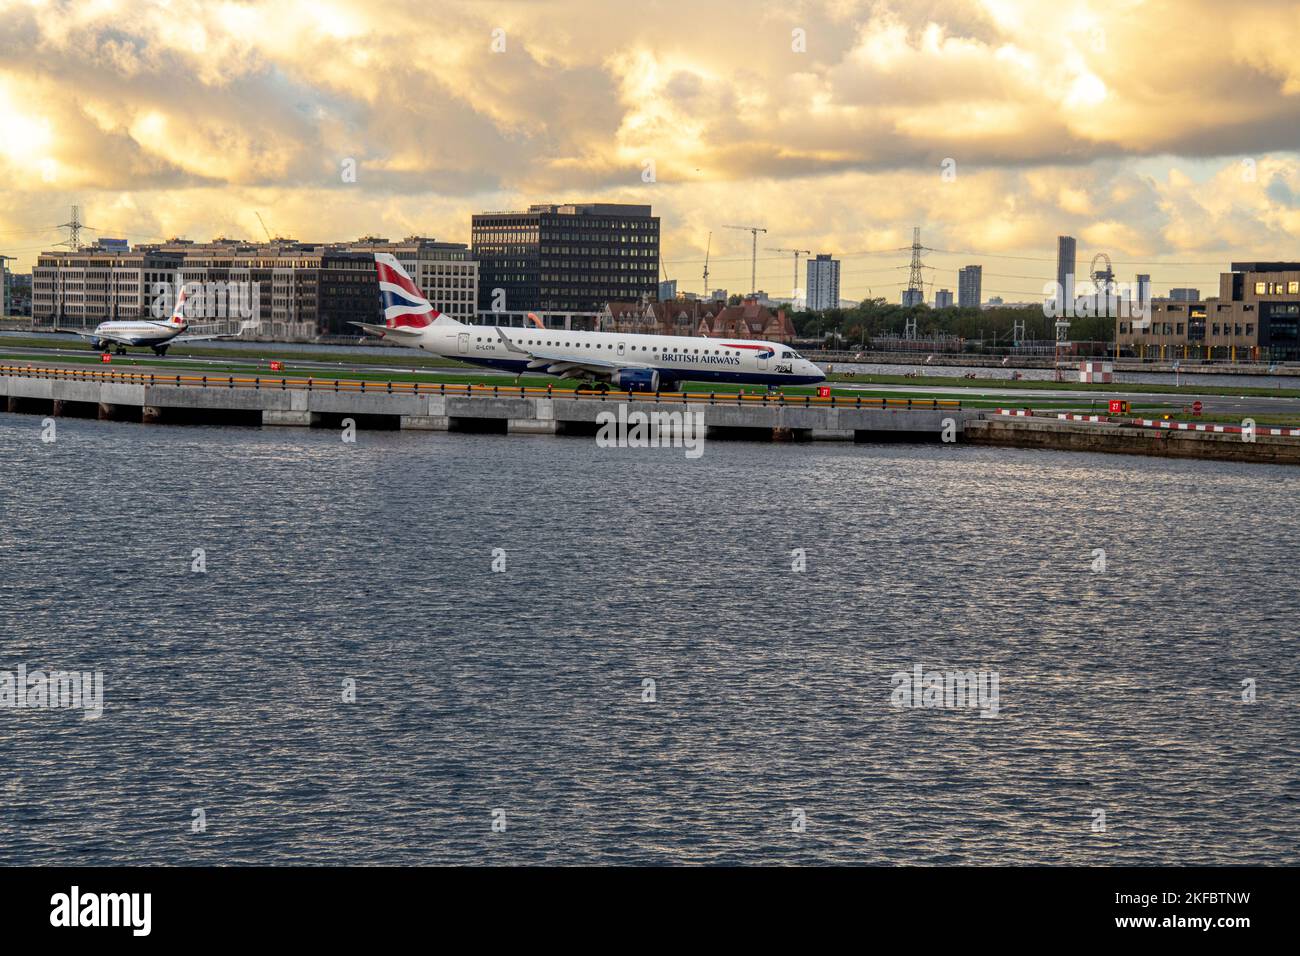 Ein Embraer von British Airways wartet auf den Start, während ein anderer am London City Airport landet. Stockfoto